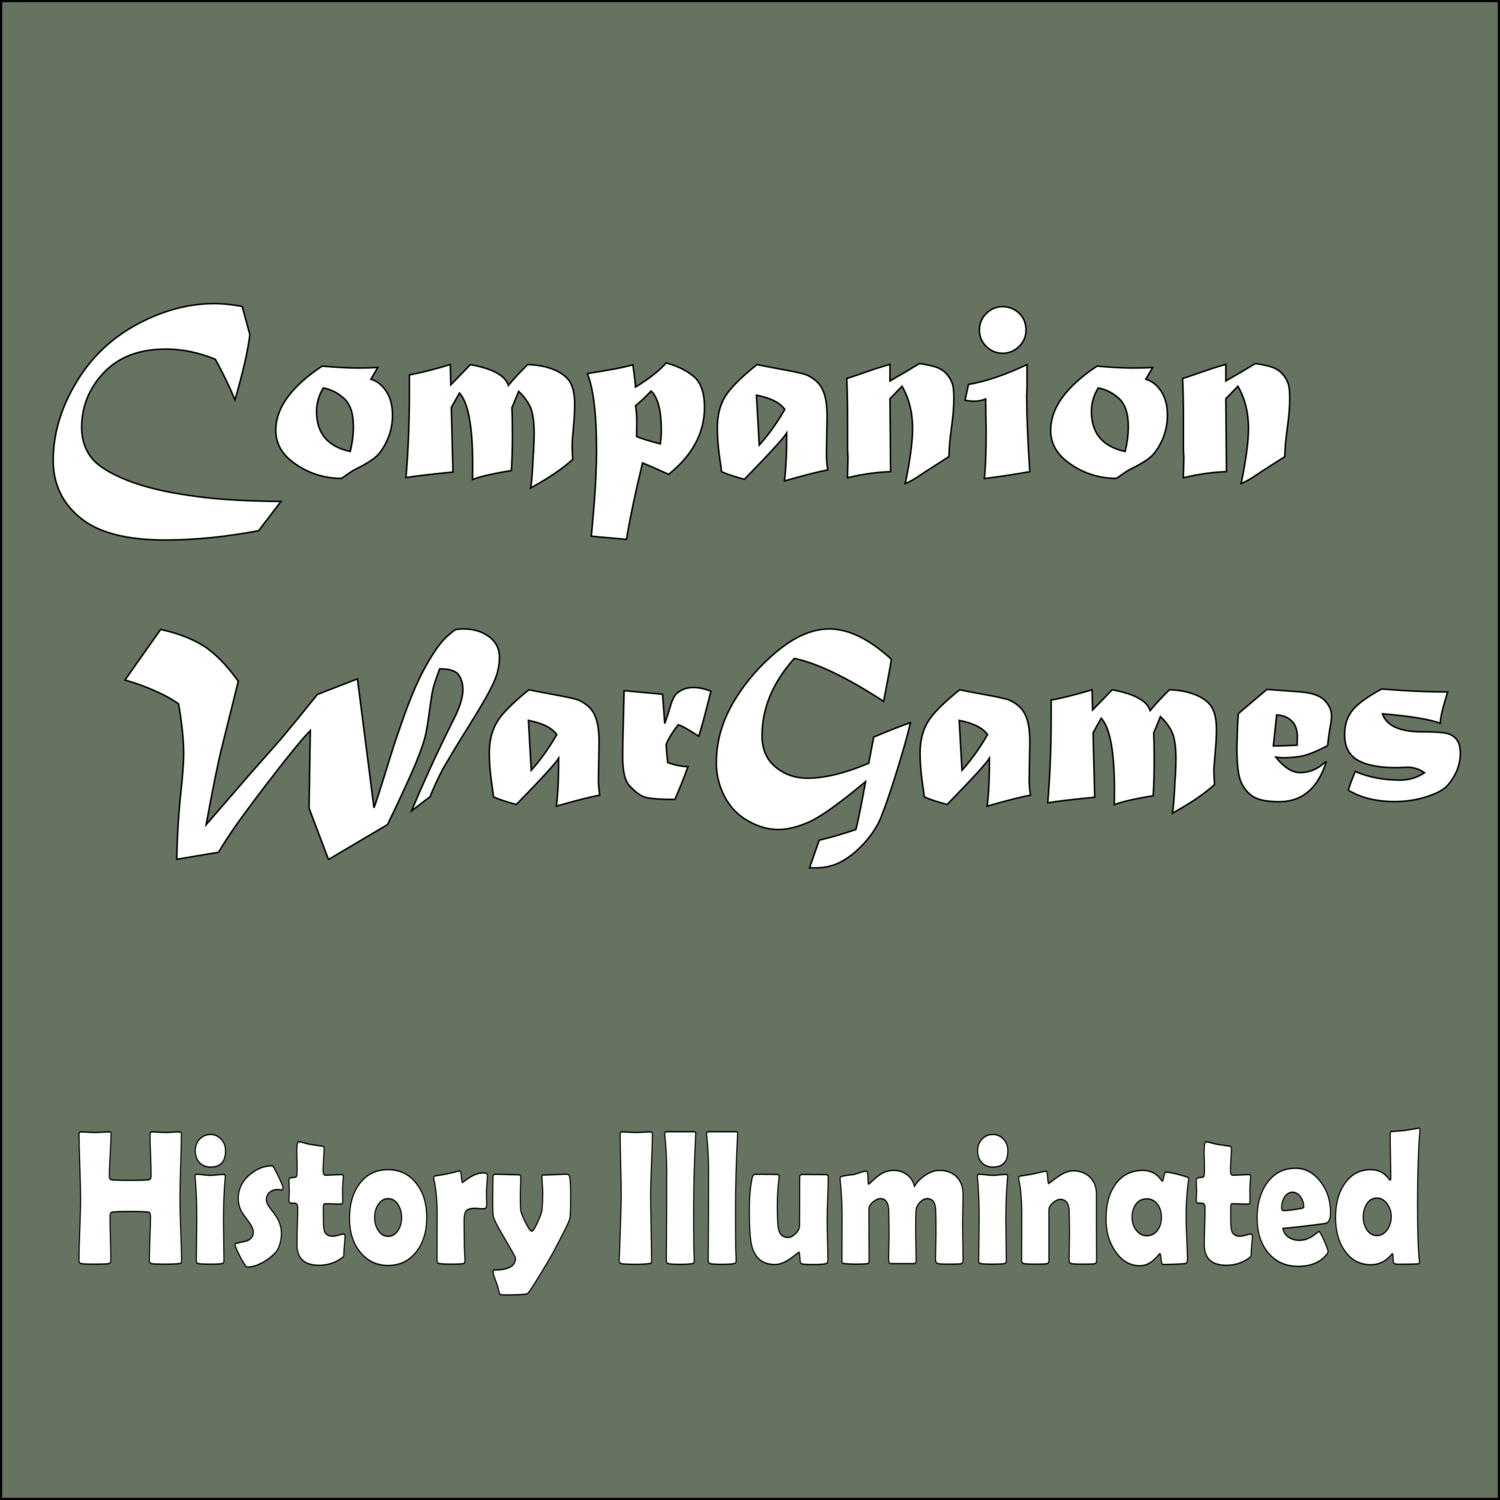 Companion Wargames